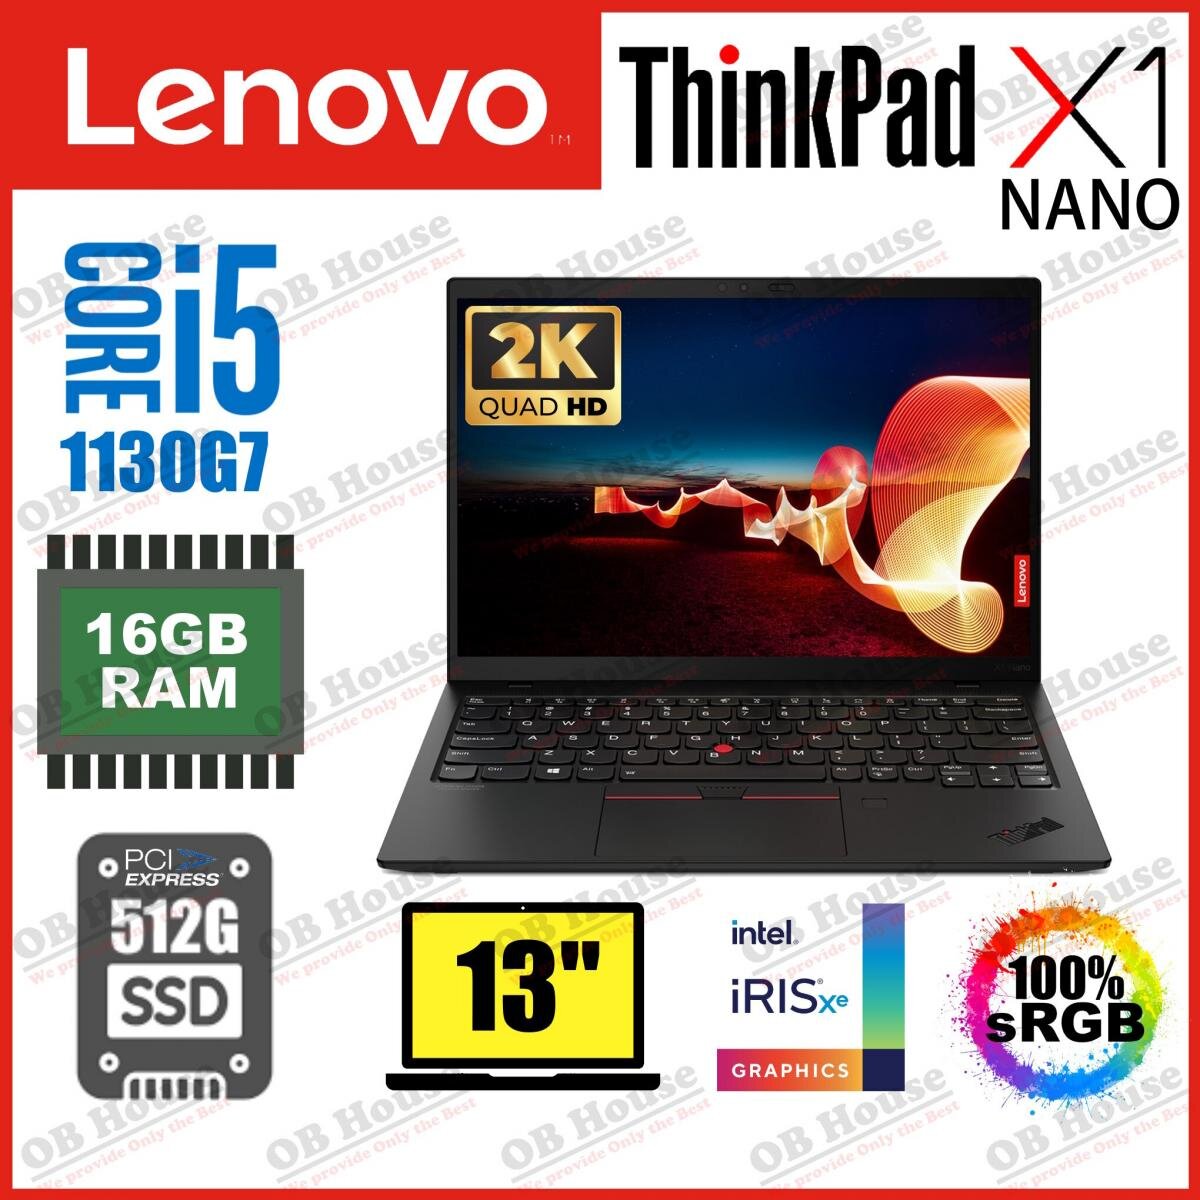 ThinkPad X1 Nano (Gen 1) i5-1130G7 16GB 512GB SSD 13吋 2K 手提電腦 (20UNS03H00) - 高質陳列品